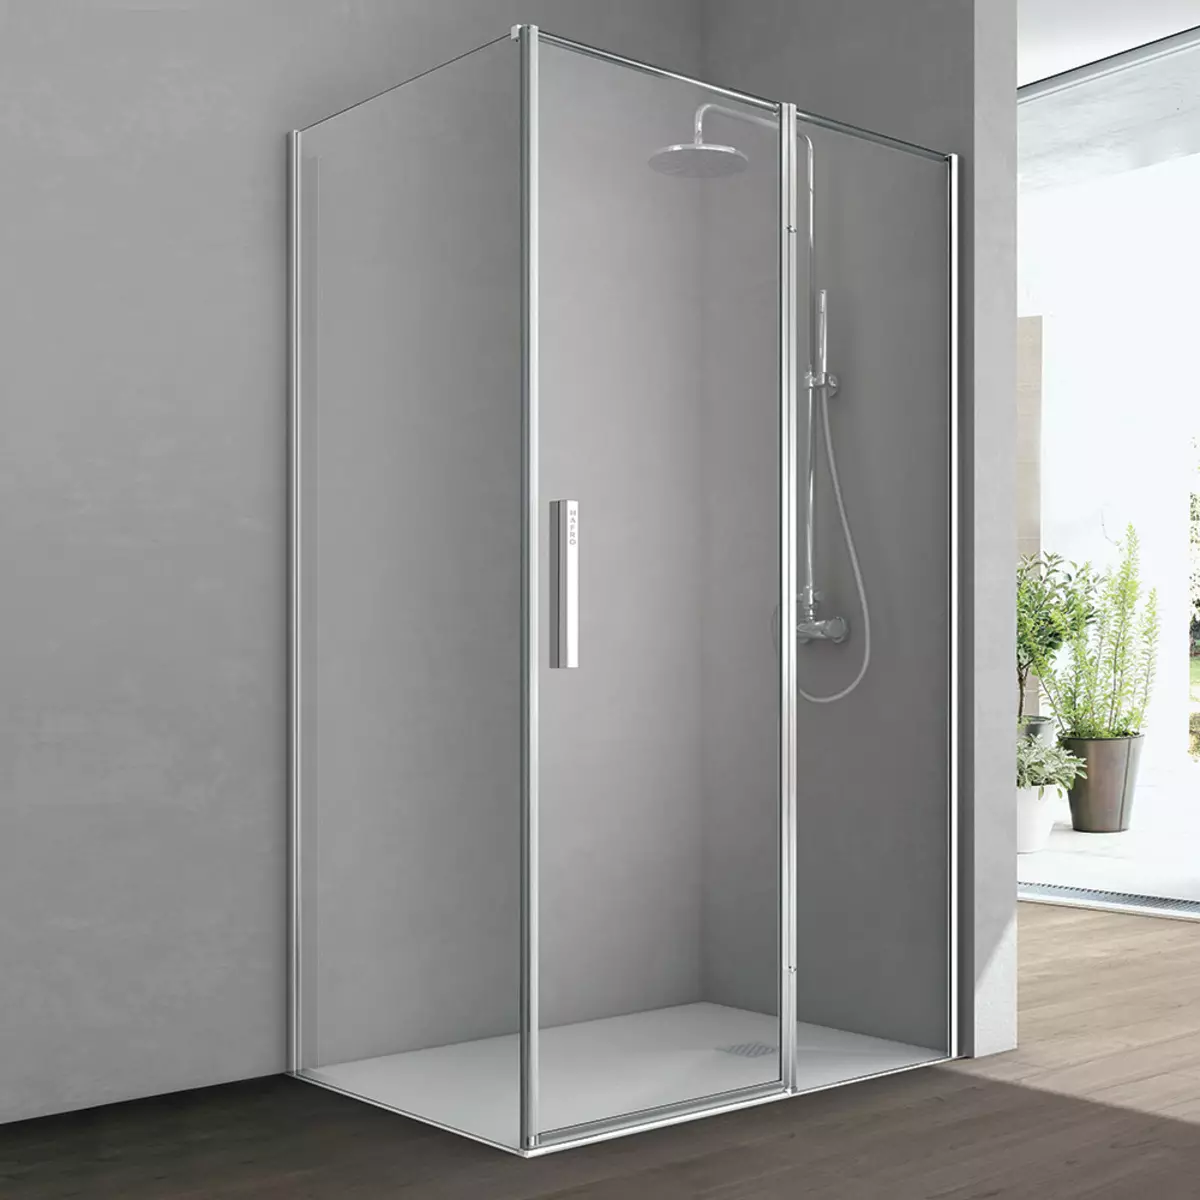 Cabines de douche avec porte battante: modèles carrés 80x80, 90x90 et 100x100 cm, cabines de douche rectangulaire et pentagonales avec une porte battante 10330_25